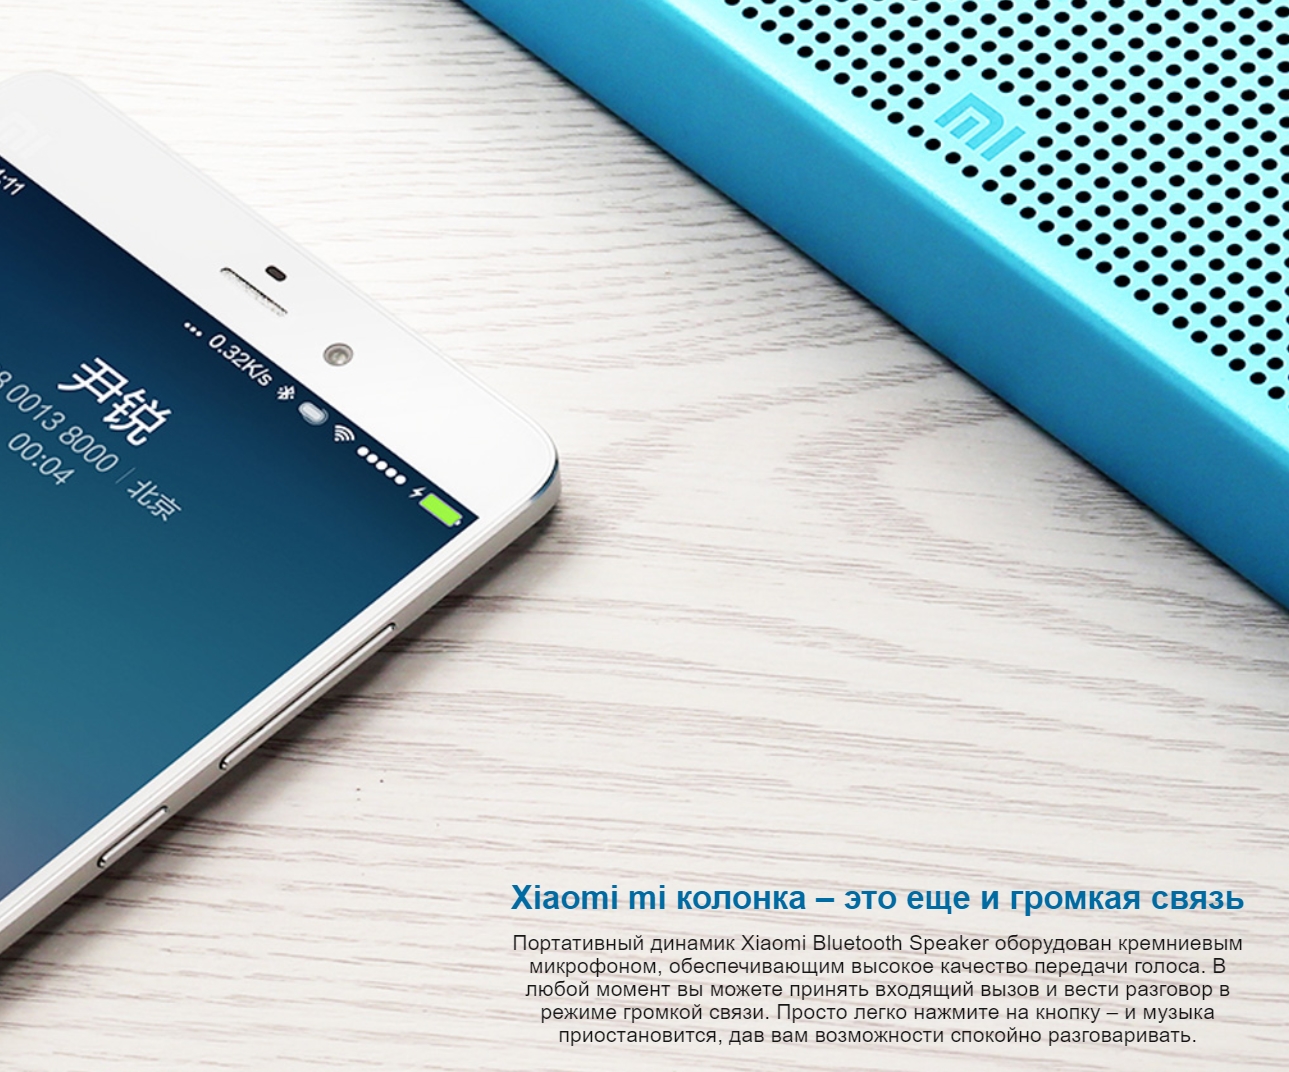 Портативная колонка Xiaomi Mi Bluetooth Speaker